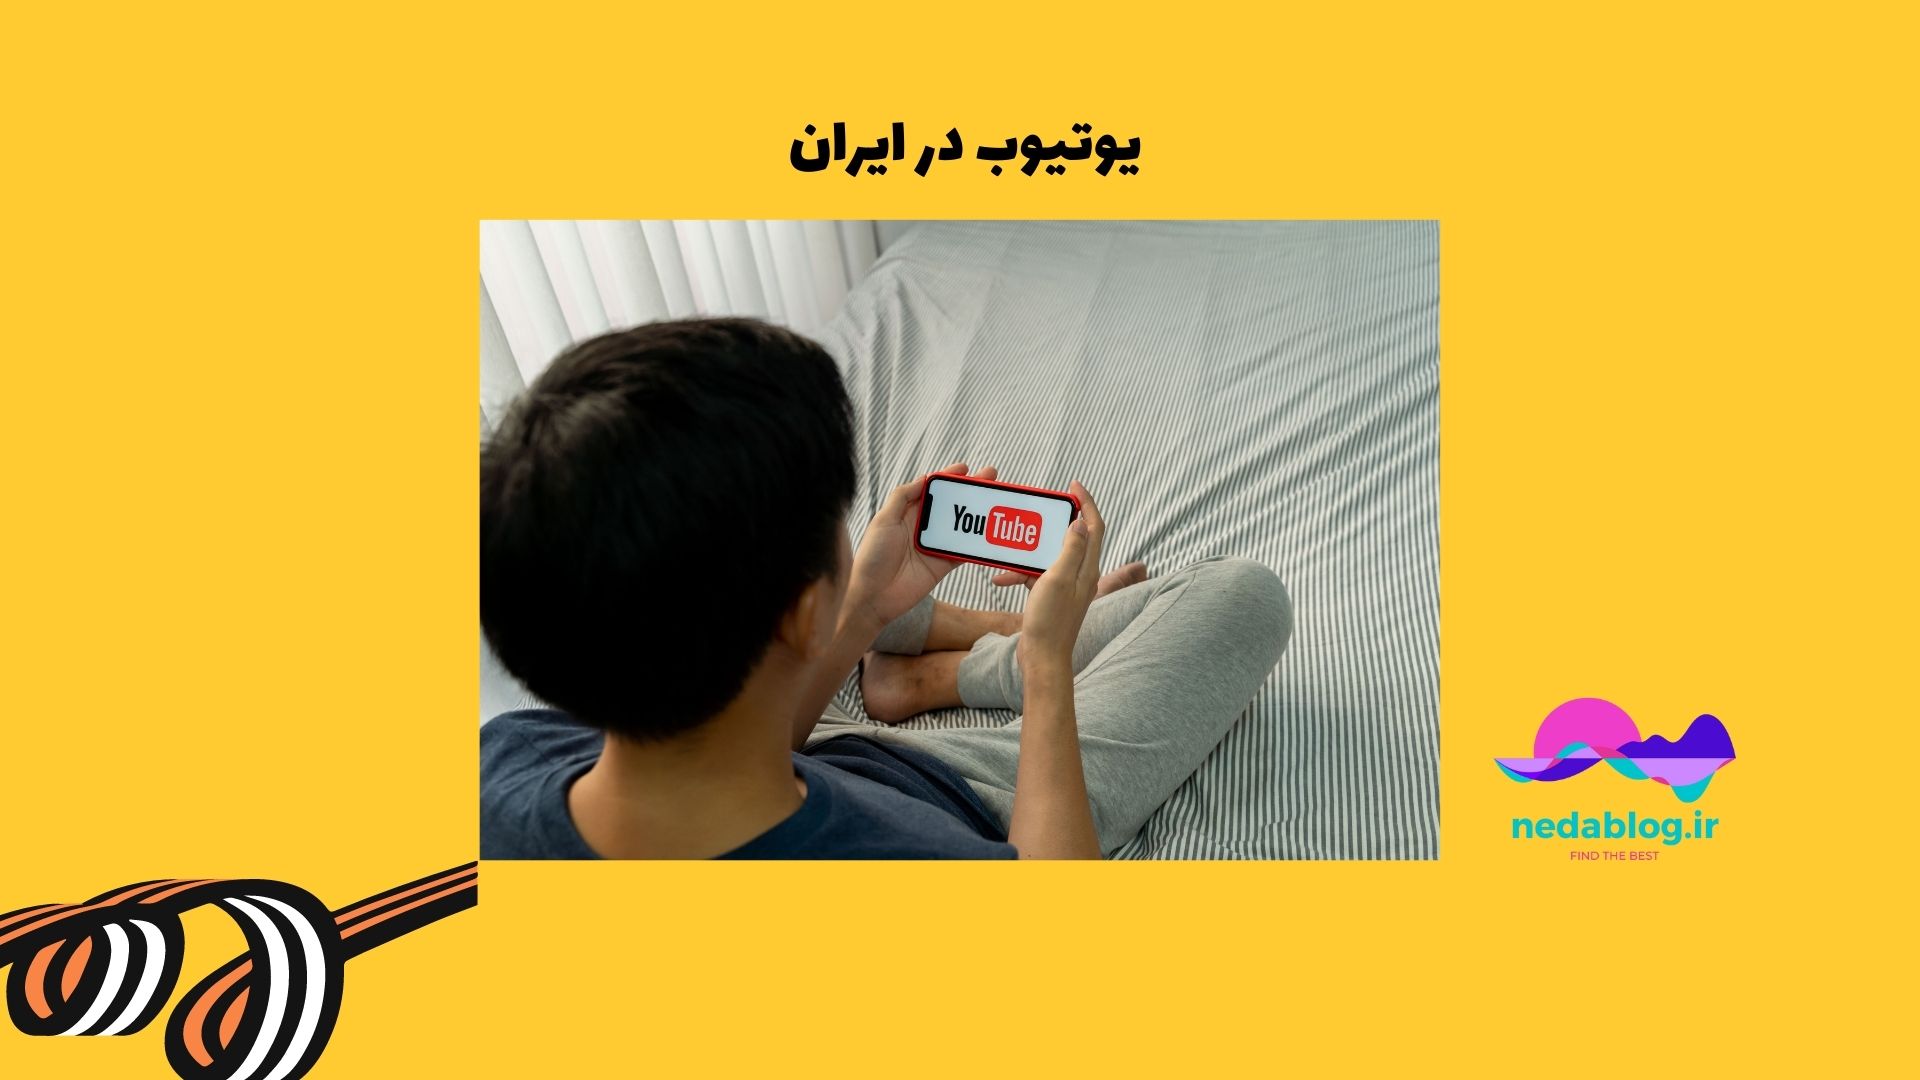 یوتیوب در ایران